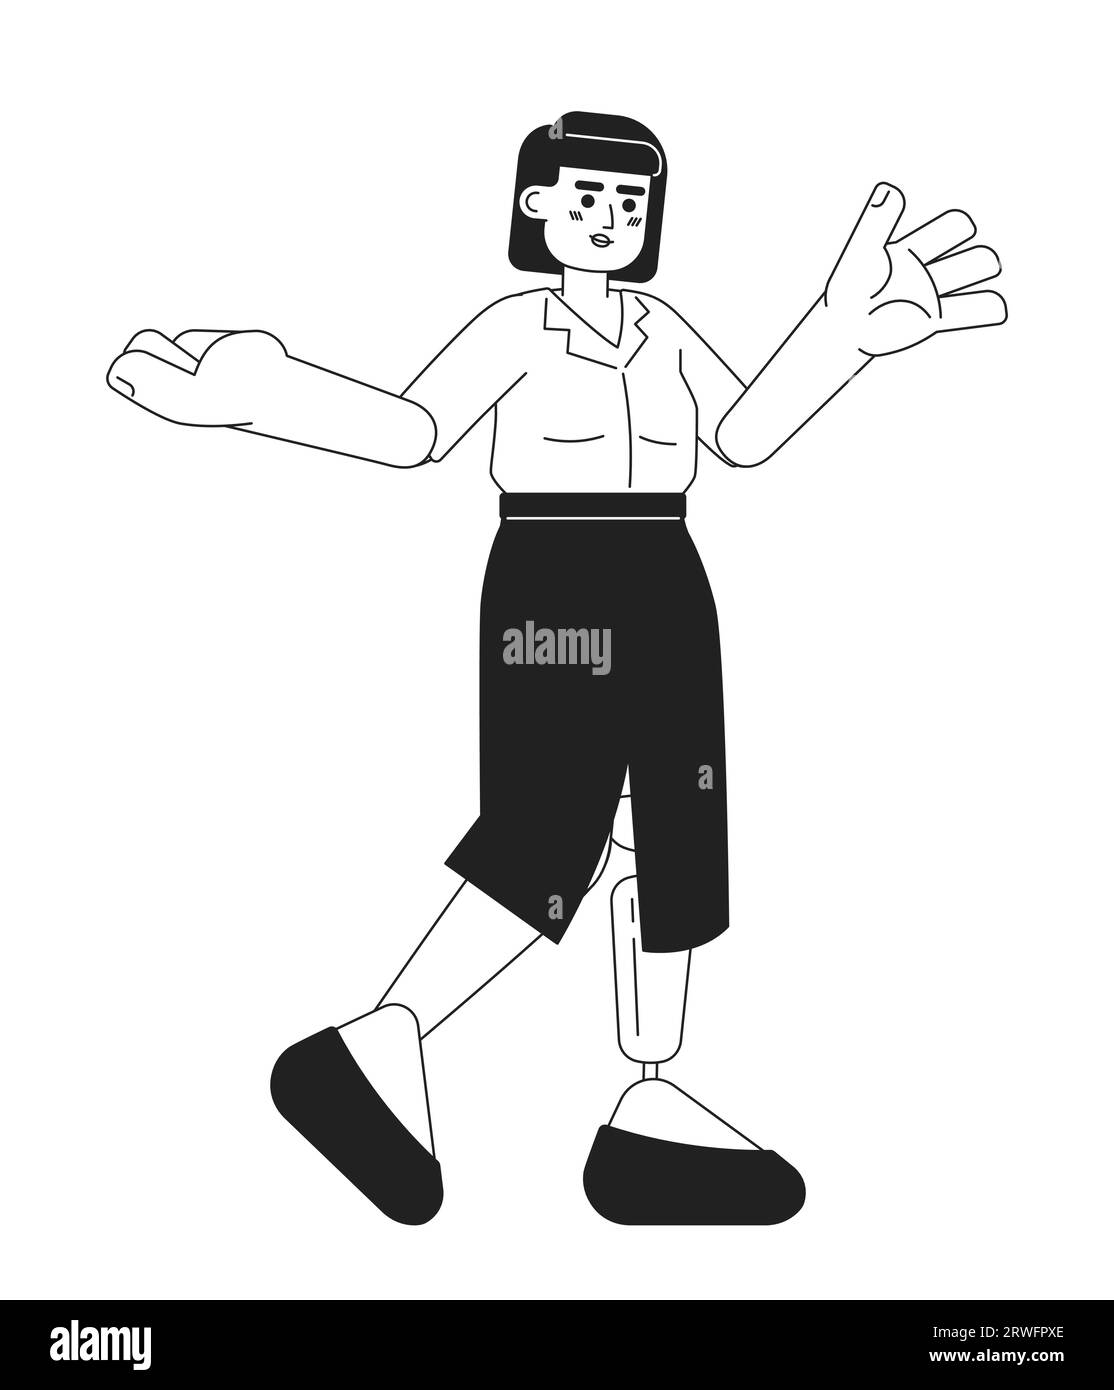 Asiatische junge Frau mit Beinprothetik, die schwarz-weiße 2D-Zeichentrickfigur trägt Stock Vektor